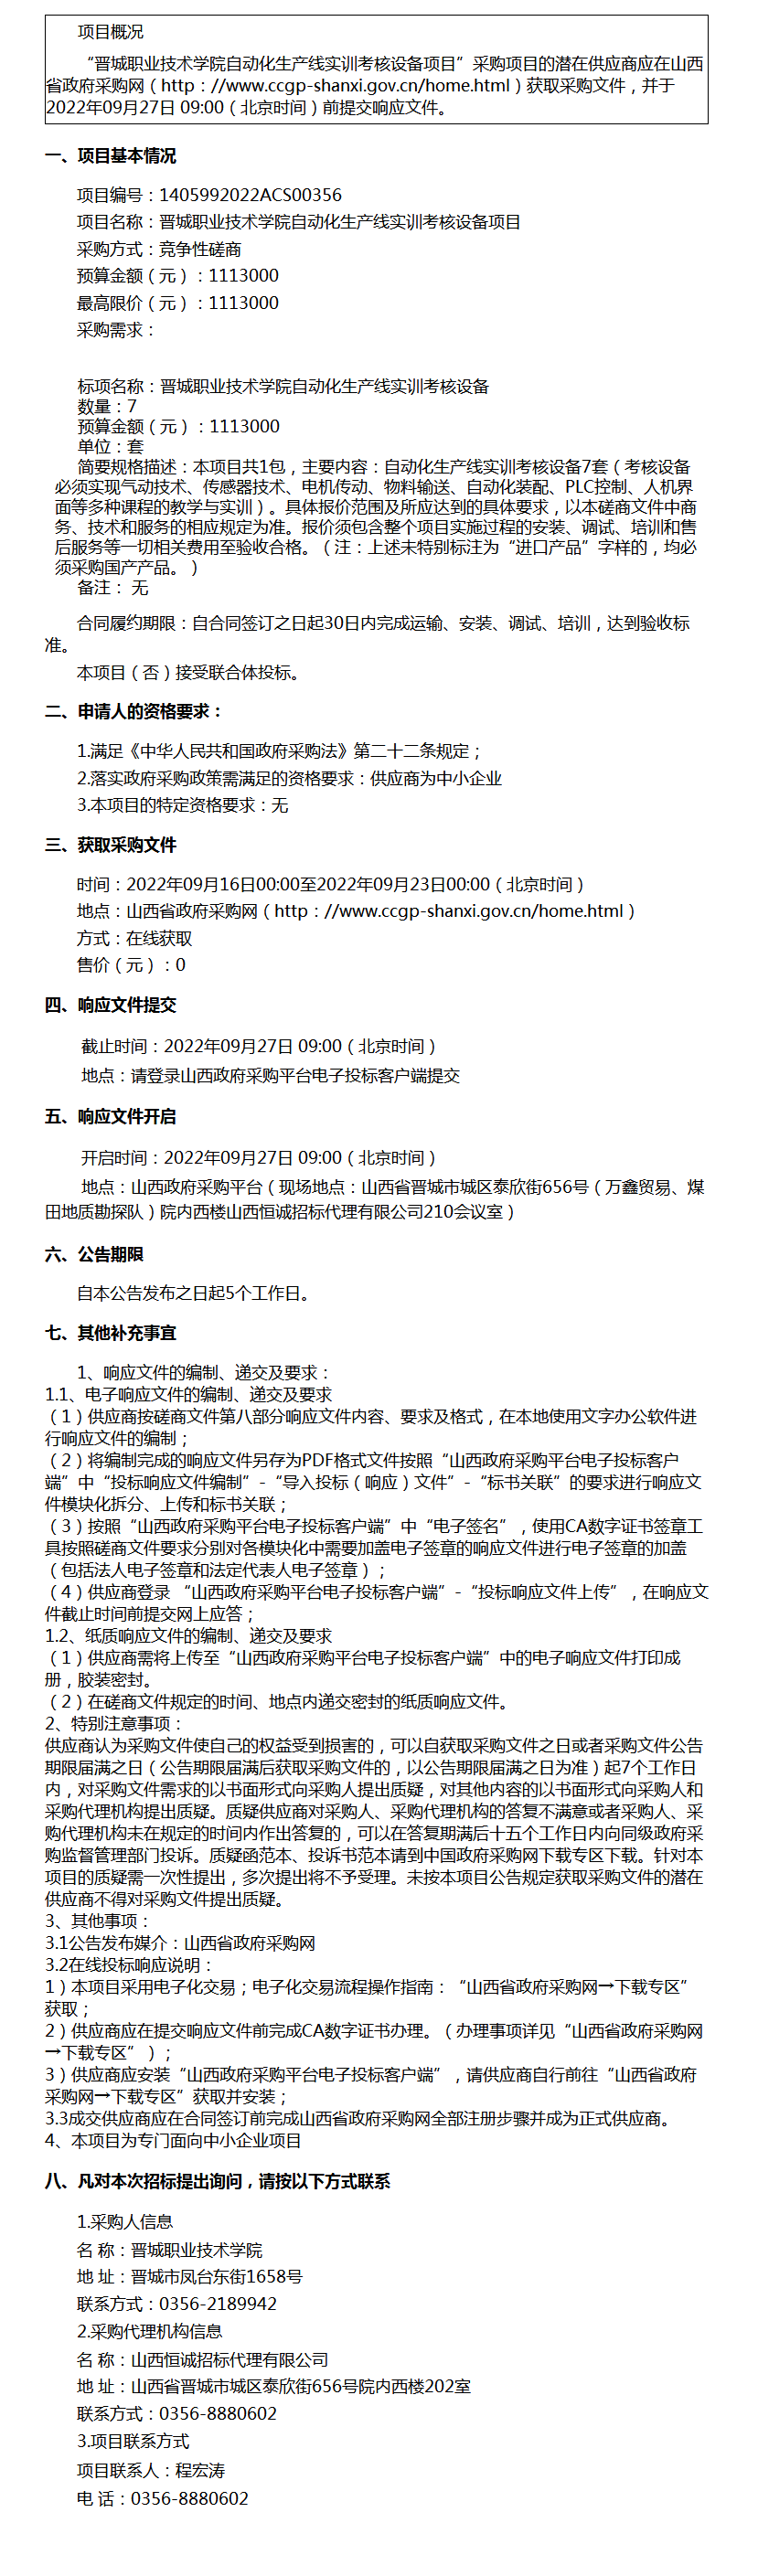 晋城职业技术学院自动化生产线实训考核设备项目竞争性磋商公告.png